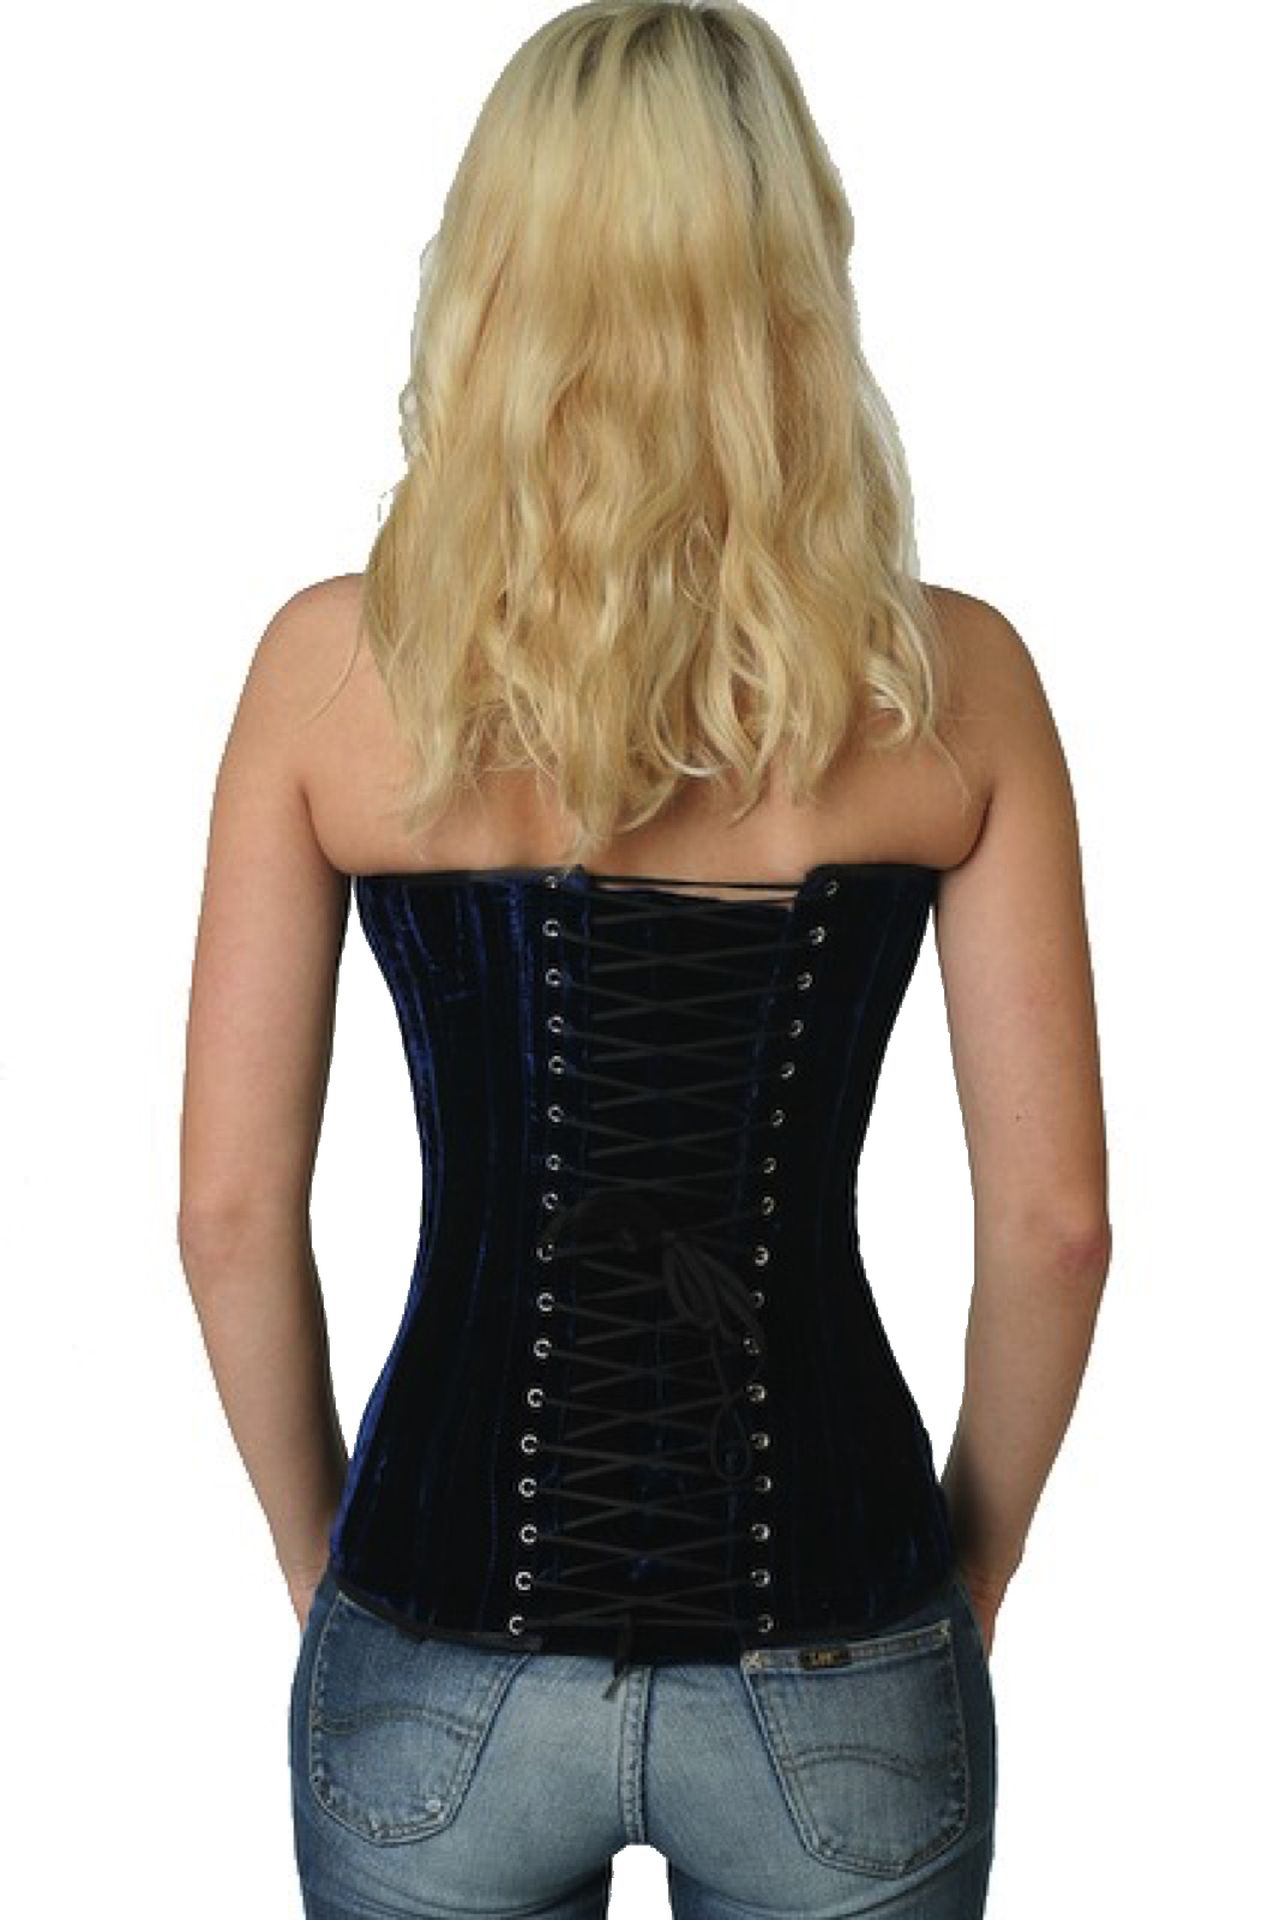 Fluweel corset blauw volborst Korset vy62